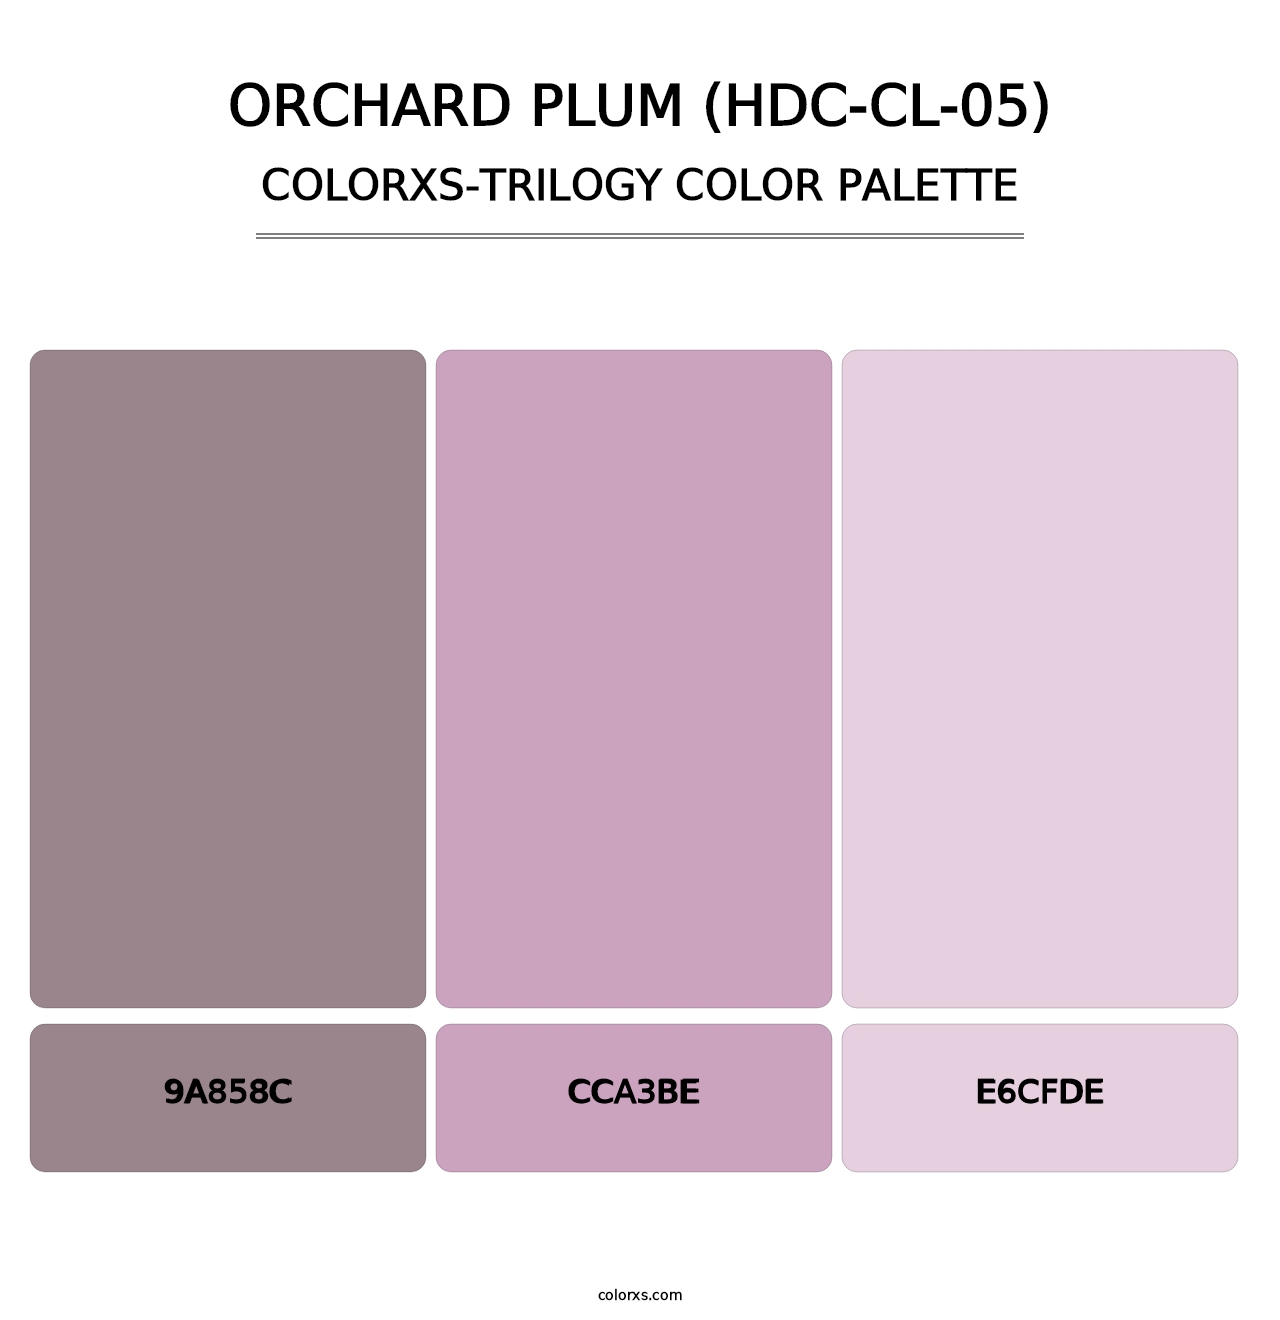 Orchard Plum (HDC-CL-05) - Colorxs Trilogy Palette